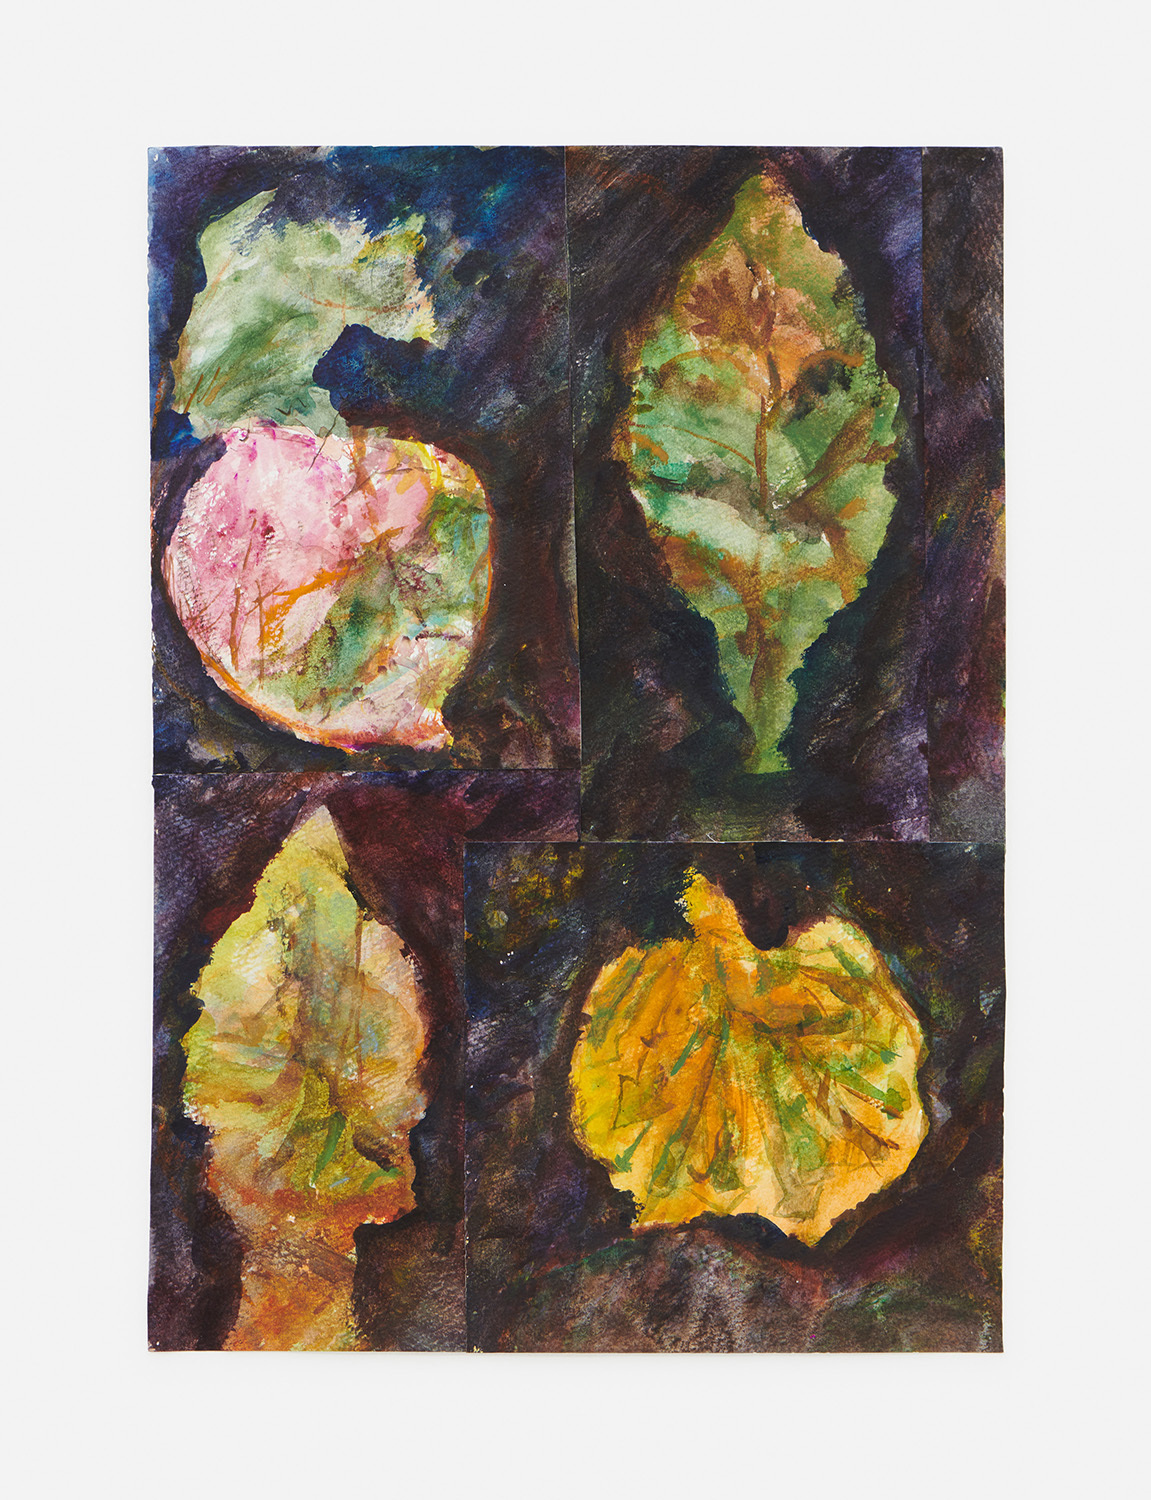 Yuji Nagai, Turnip 1/2, 2020. Watercolor on paper, 32.5 x 23 cm